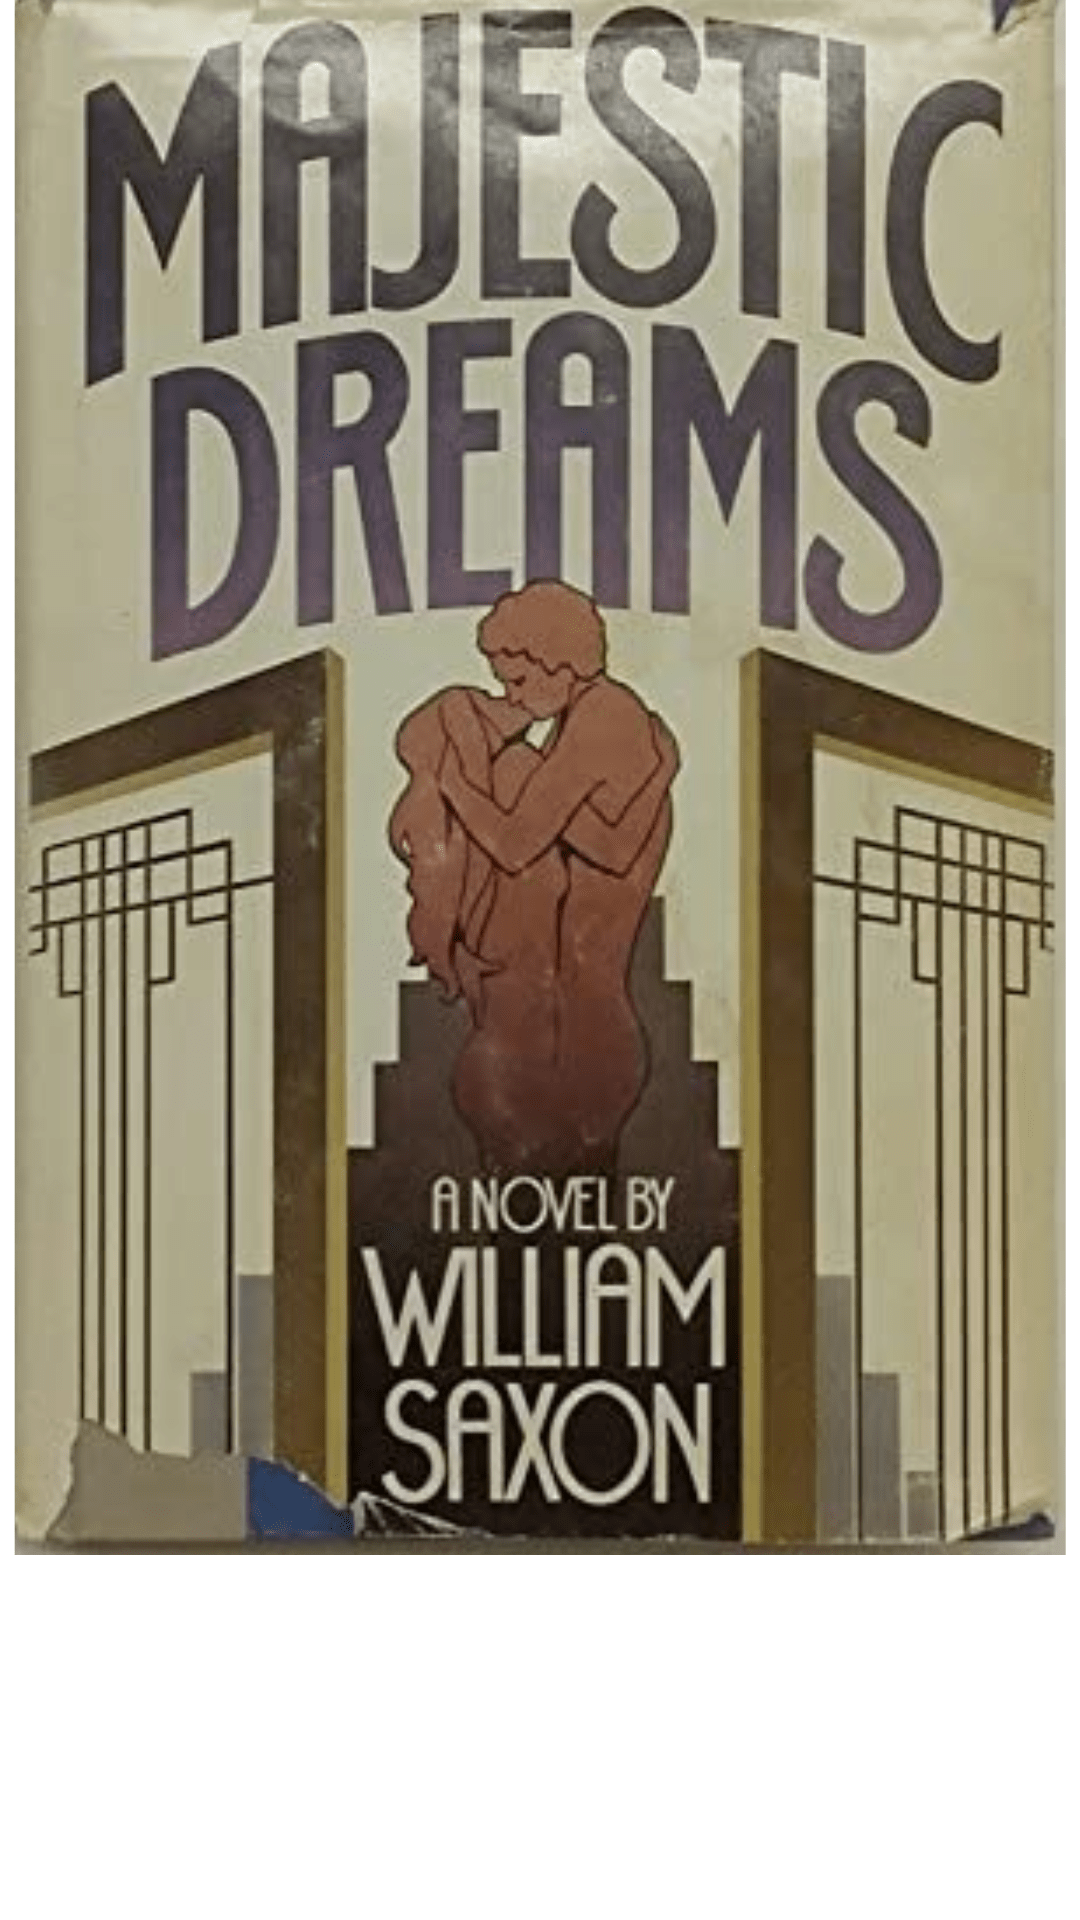 Majestic Dreams by William Saxon